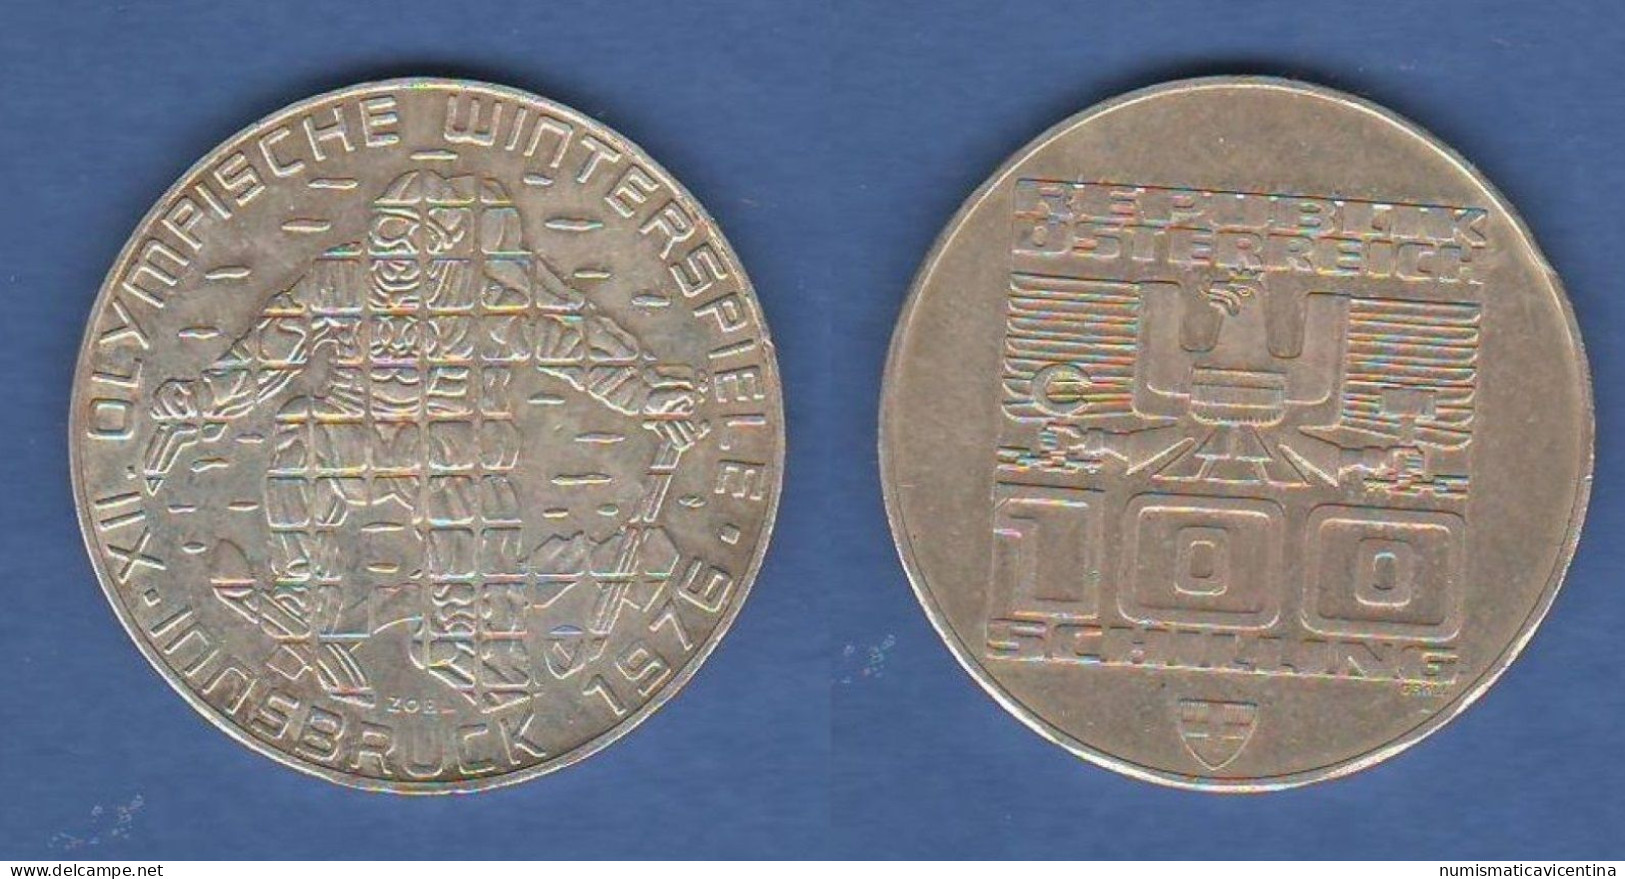 Austria Österreich Shilling 100 Schilling 1976 INNSBRUCK WINTERSPIELE Silber Coin - Austria